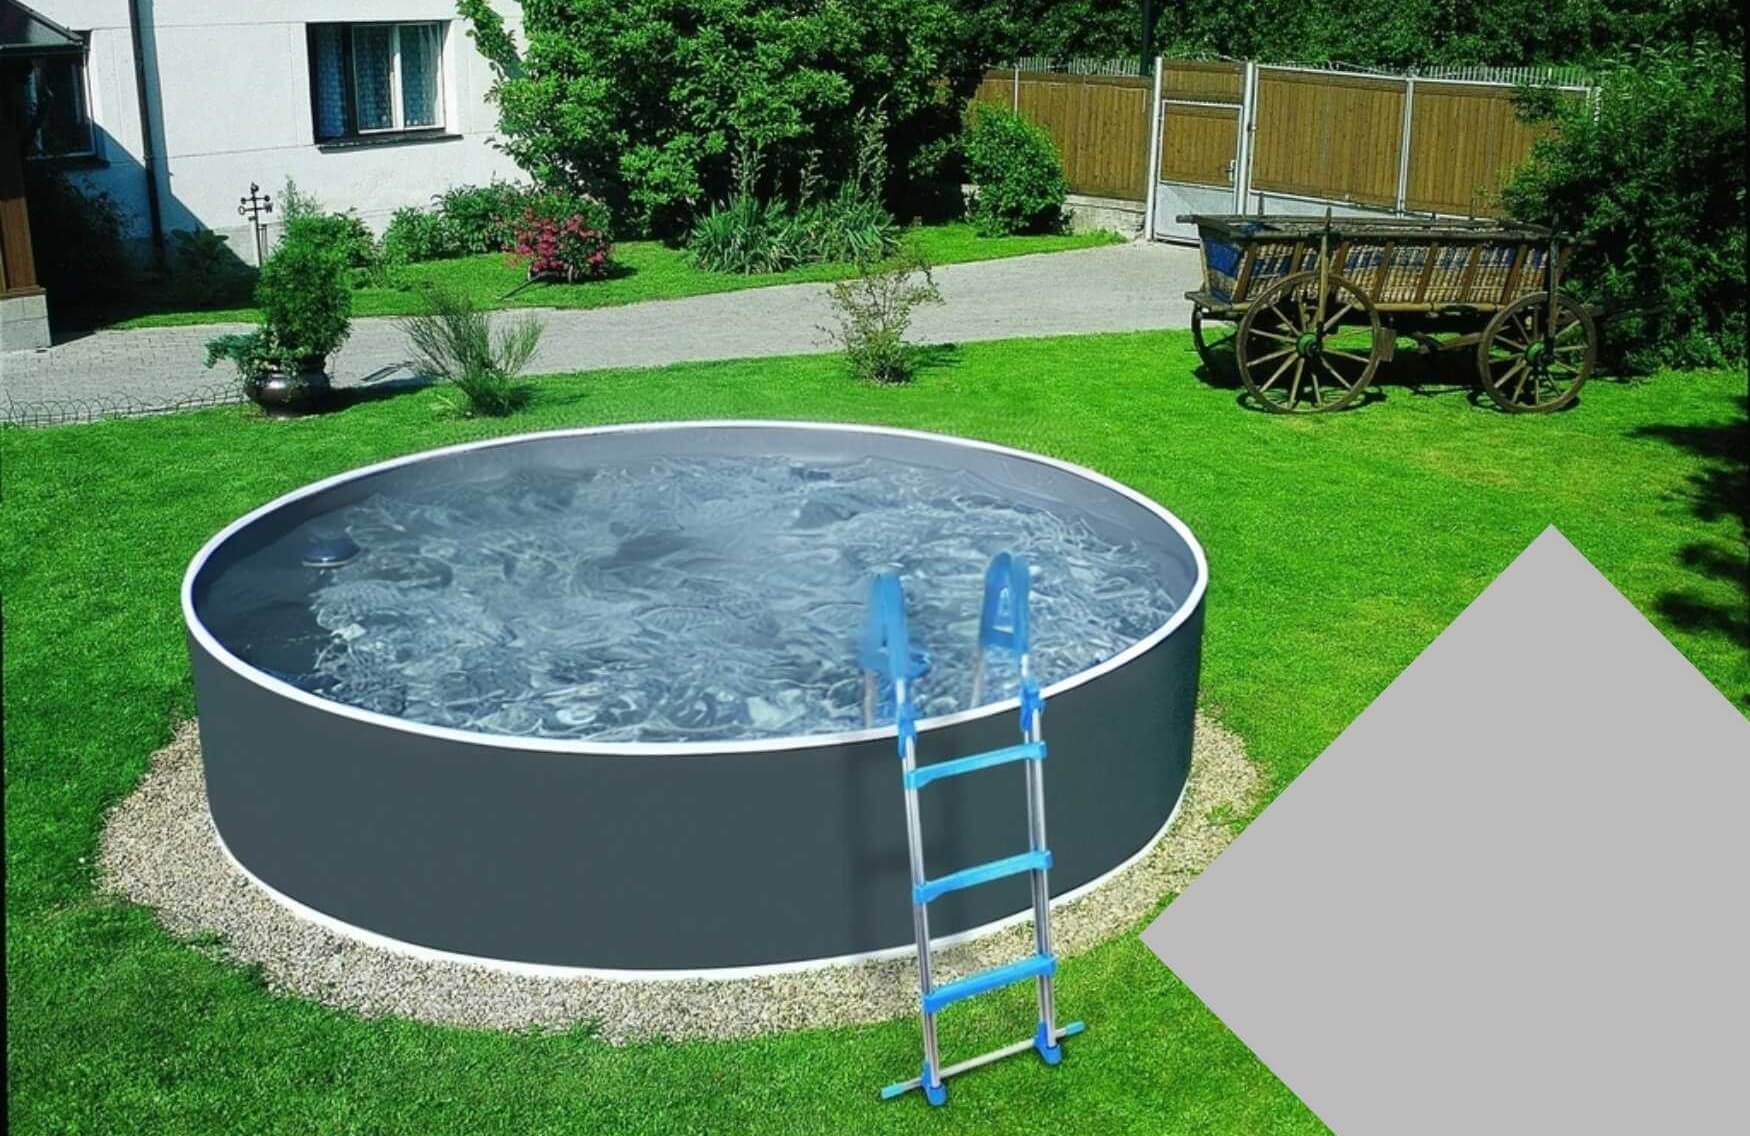 Planet Pool Náhradní bazénová fólie Grey pro bazén průměr 3,6 m x 1,1 m